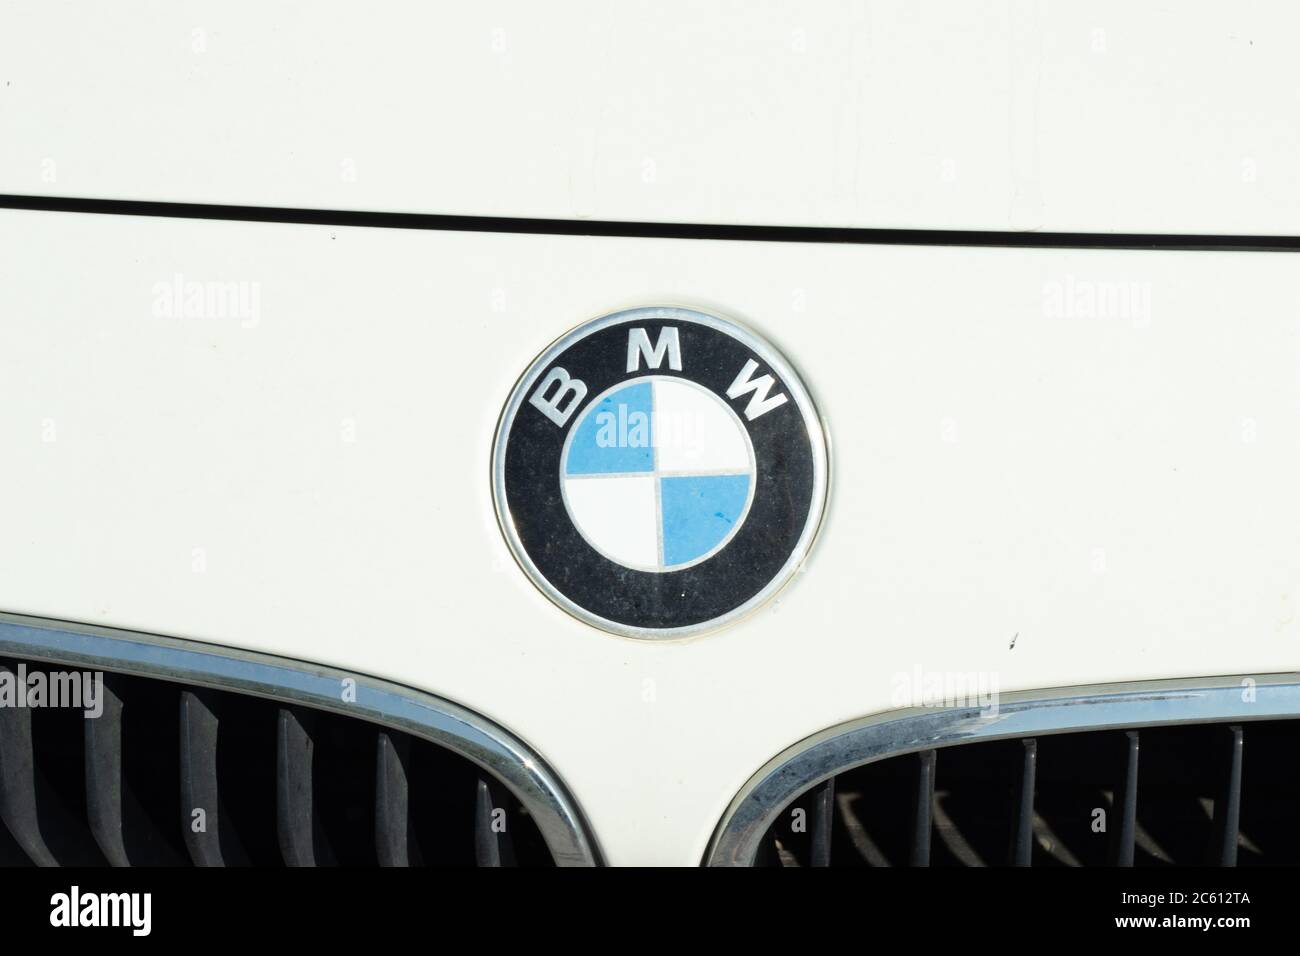 Bmw car sign logo immagini e fotografie stock ad alta risoluzione - Alamy